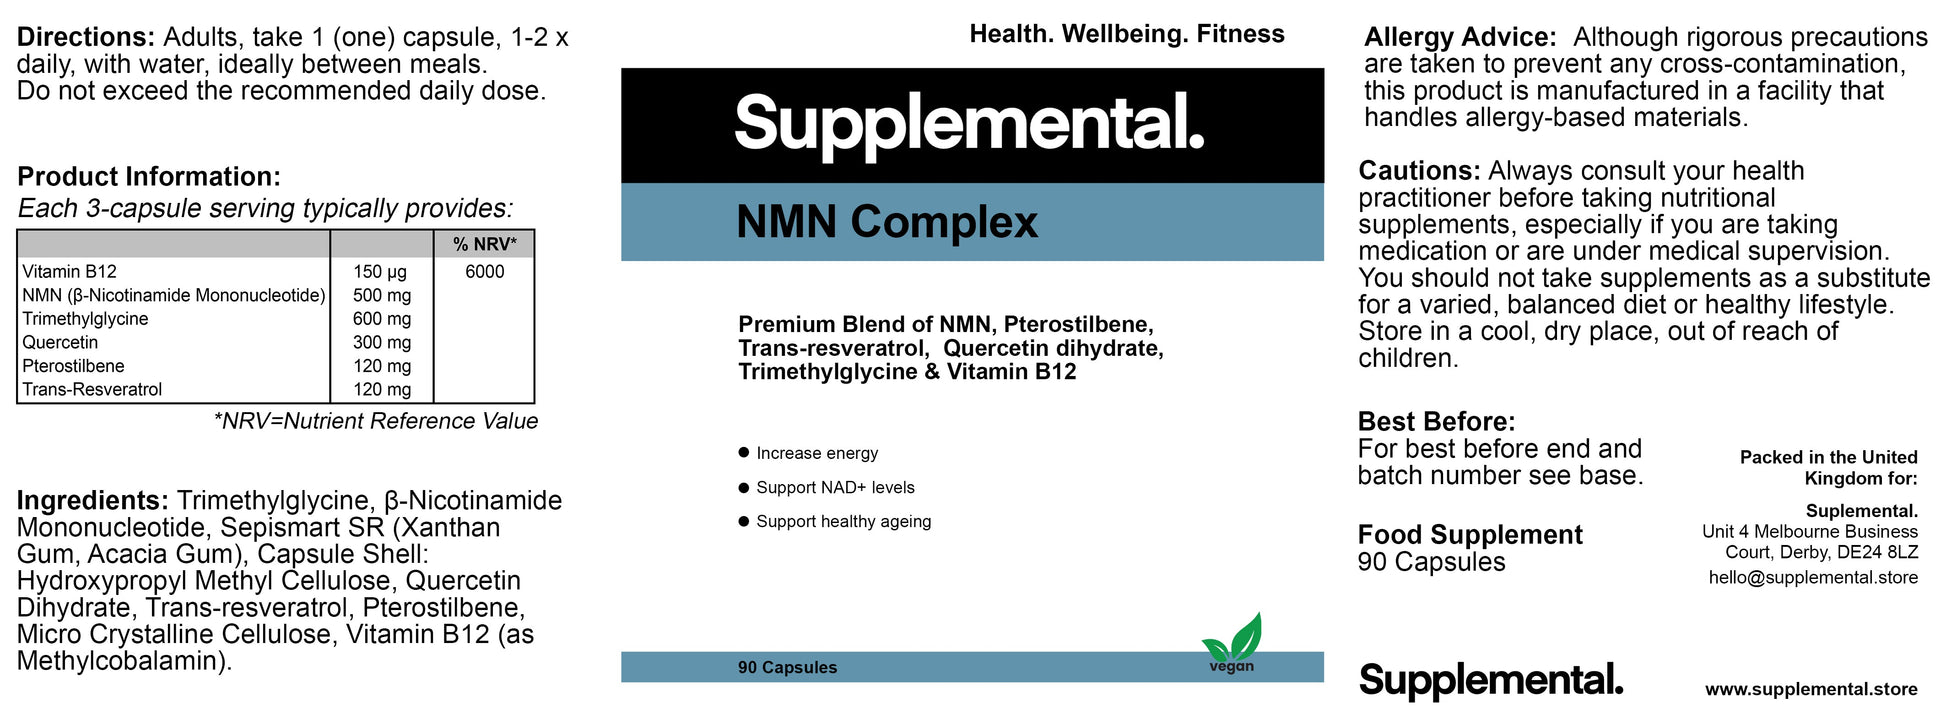 NMN Complex - Supplemental